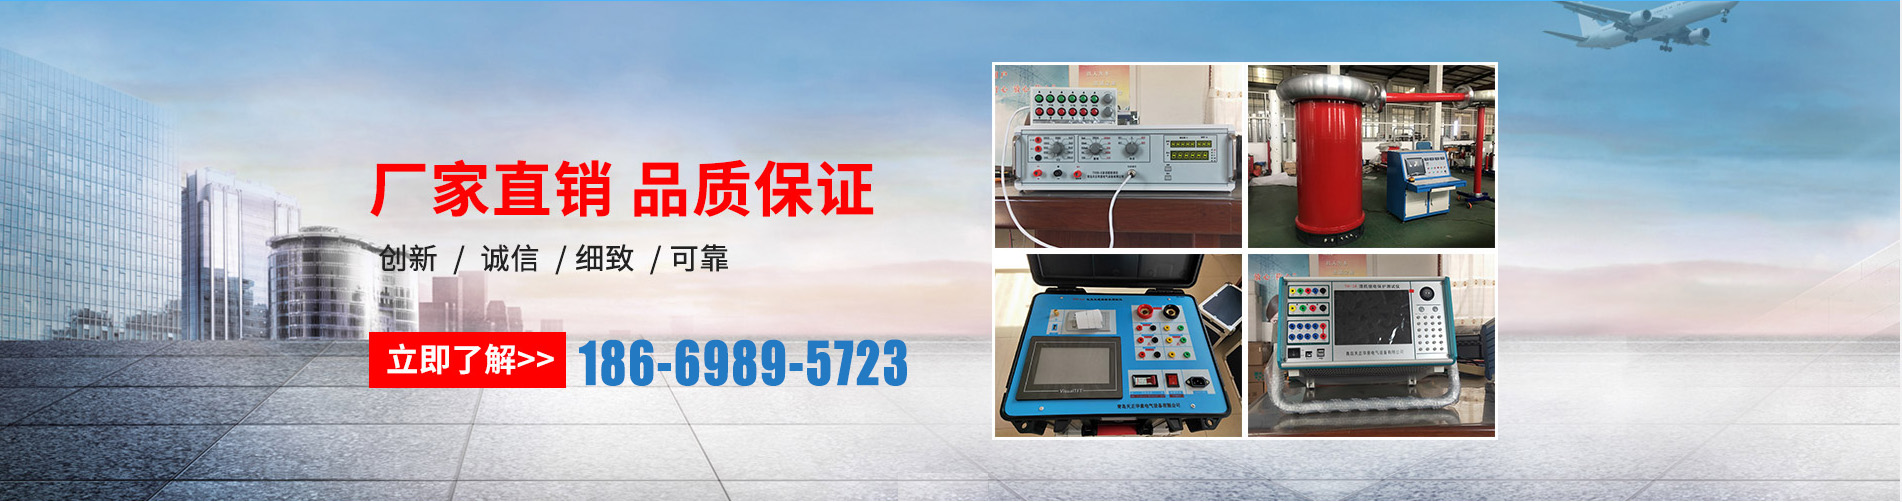 蓄电池充放电测试仪、徐州本地蓄电池充放电测试仪、徐州、徐州蓄电池充放电测试仪